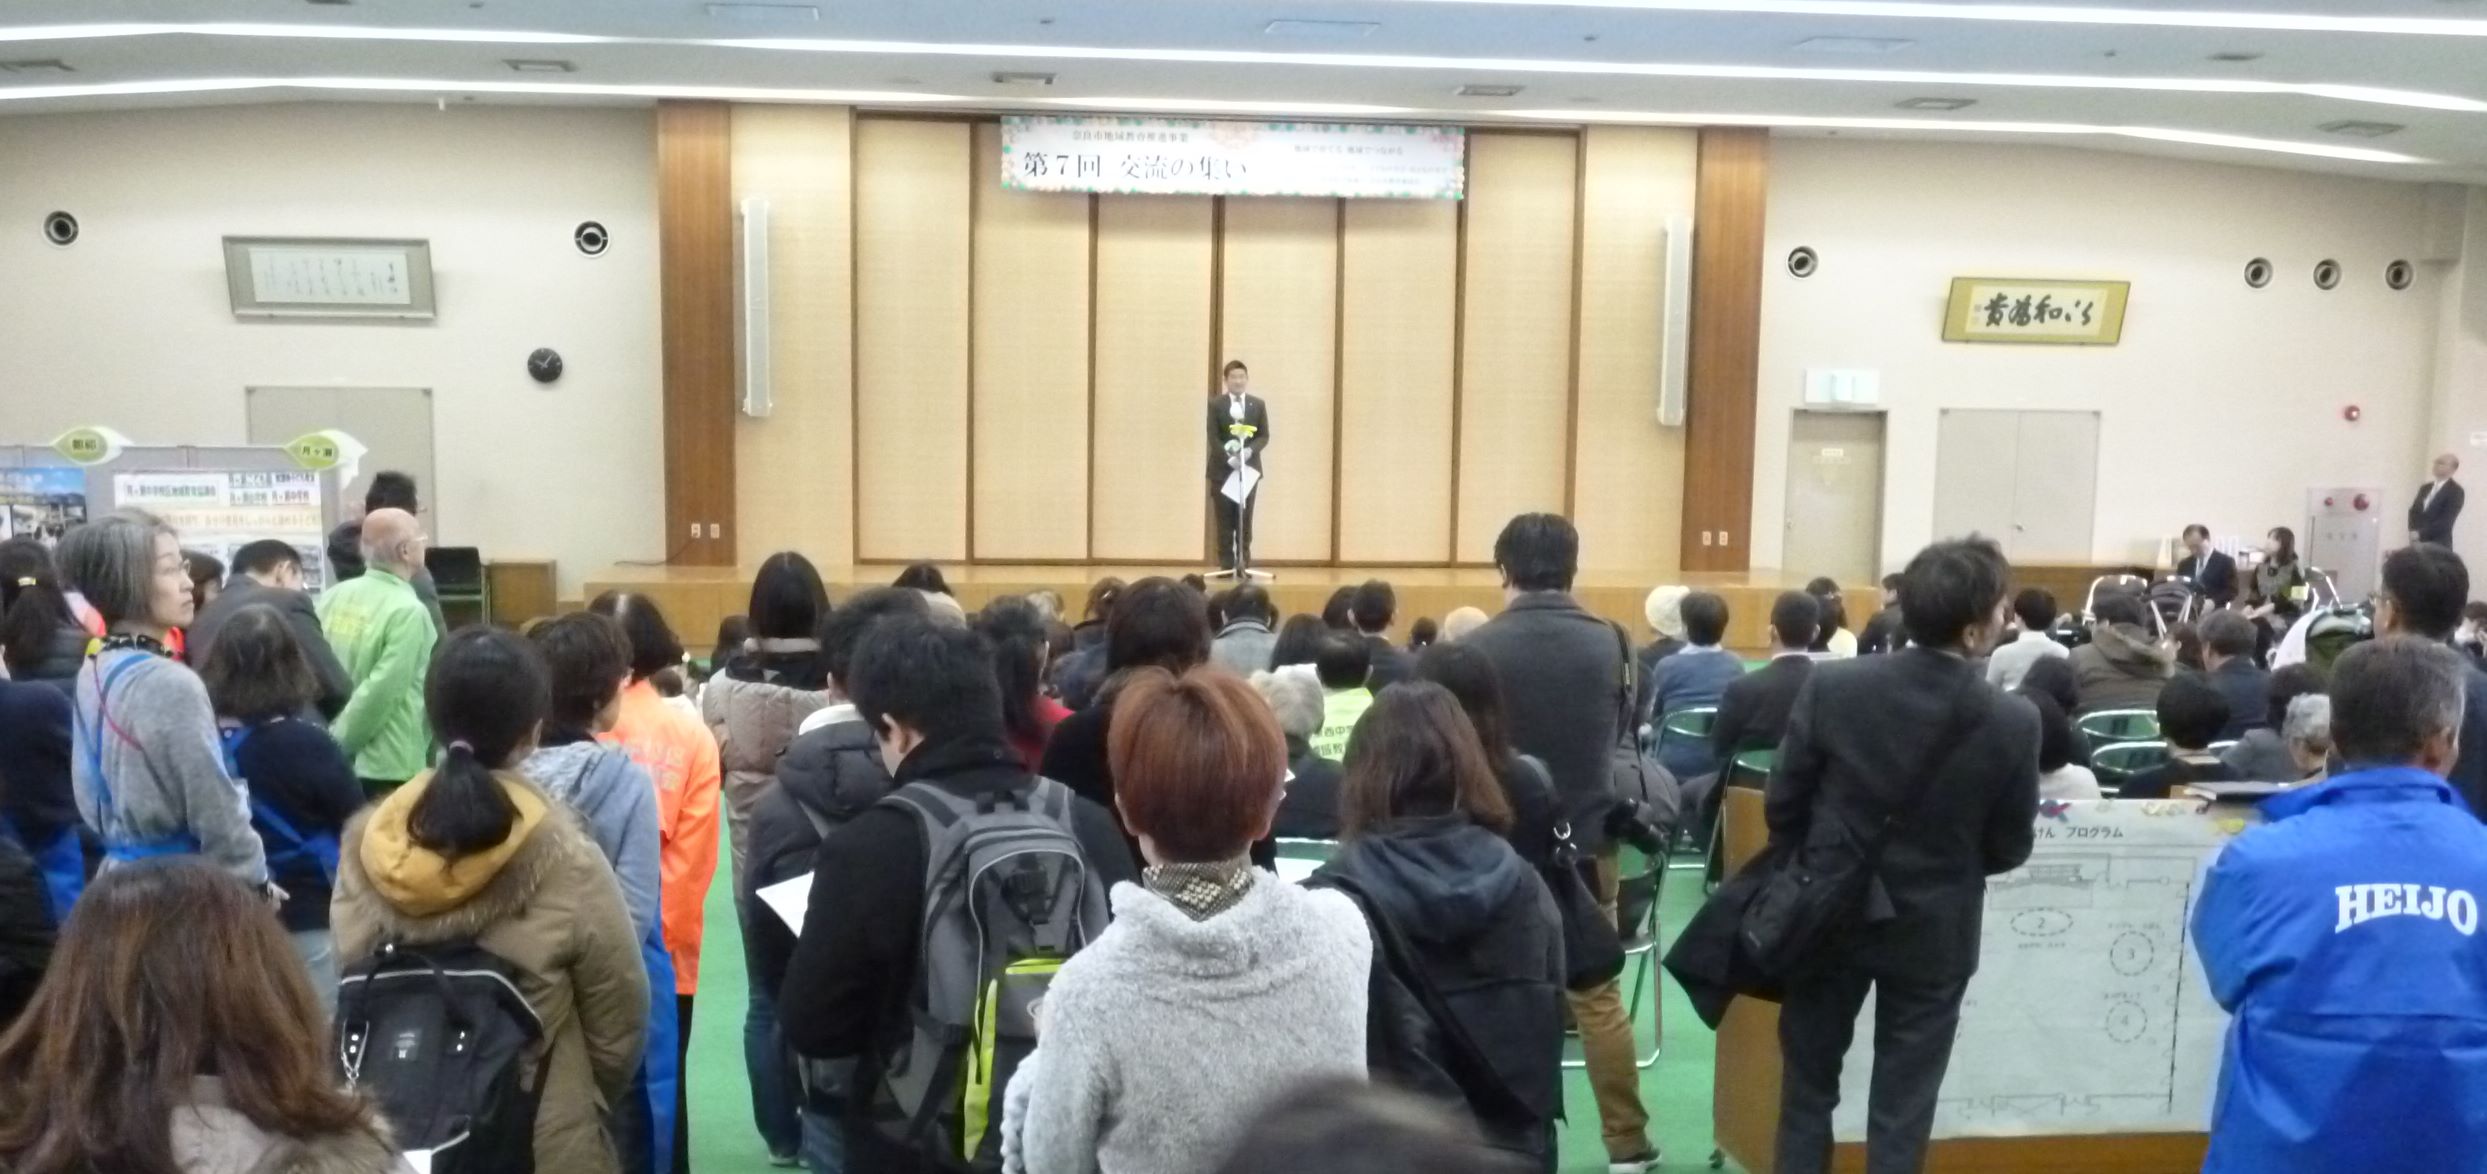 奈良市地域教育推進事業 第7回「交流の集い」が開催されました!の画像1